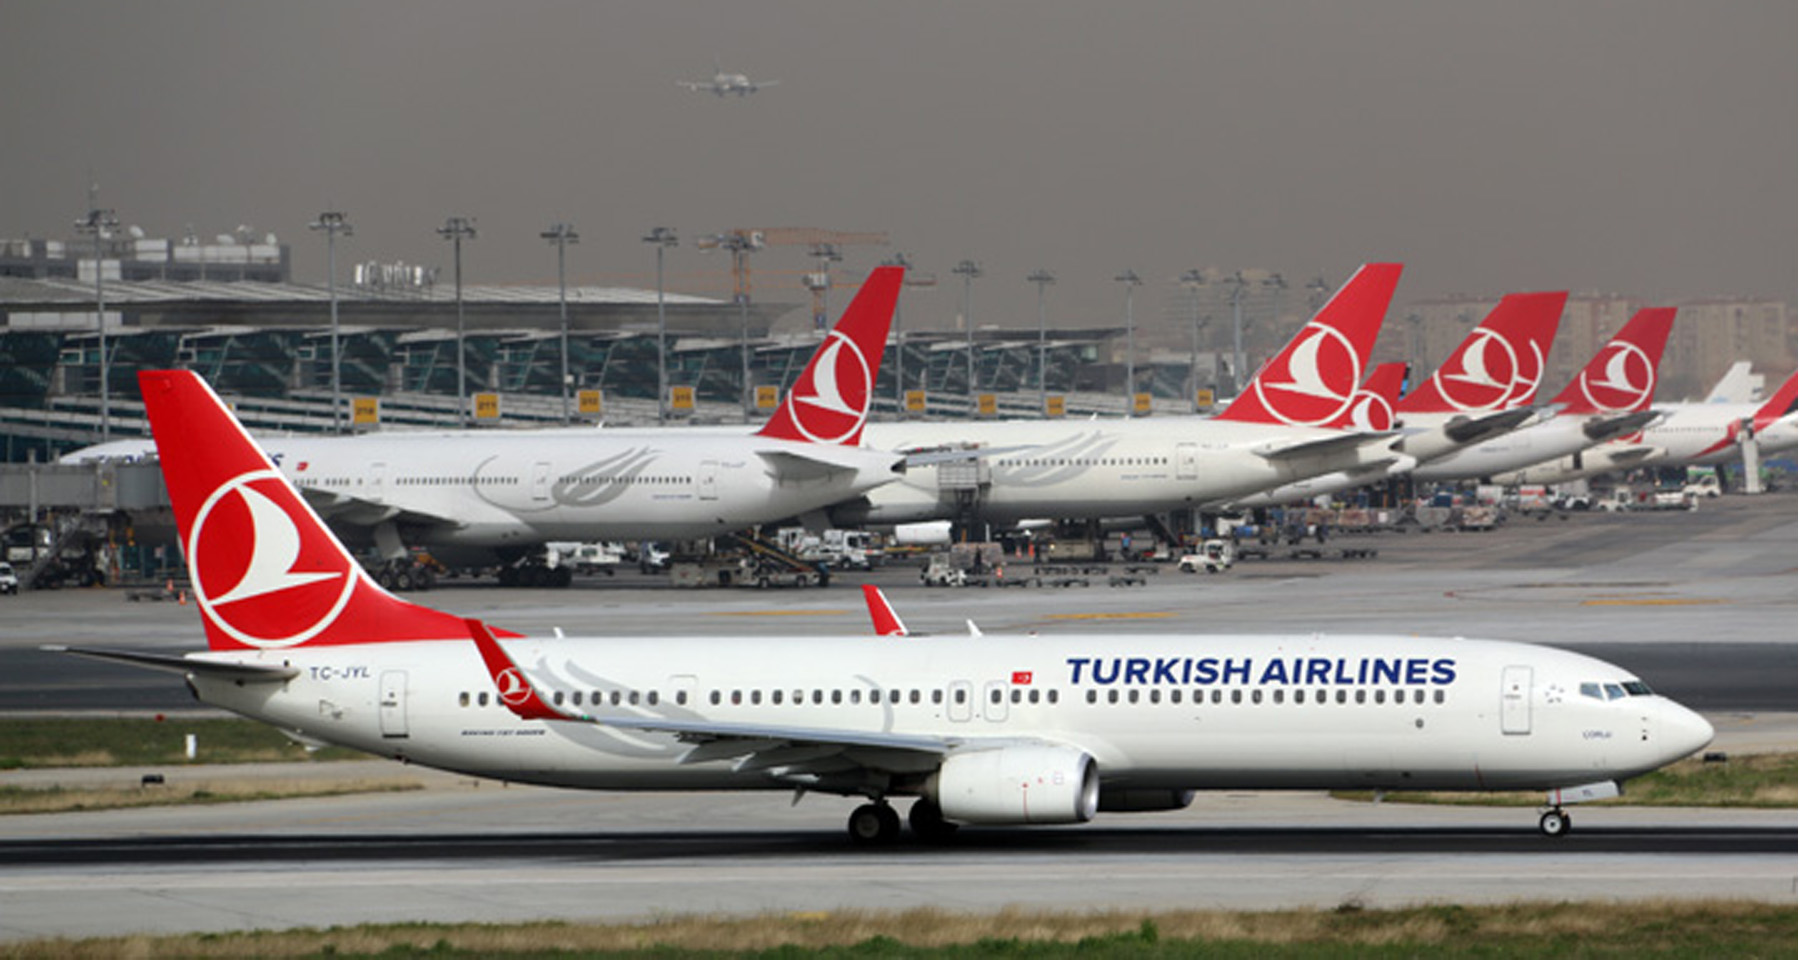 Թուրքական ավիաուղիները թռիչքներ կիրականացնեն դեպի Երևան

